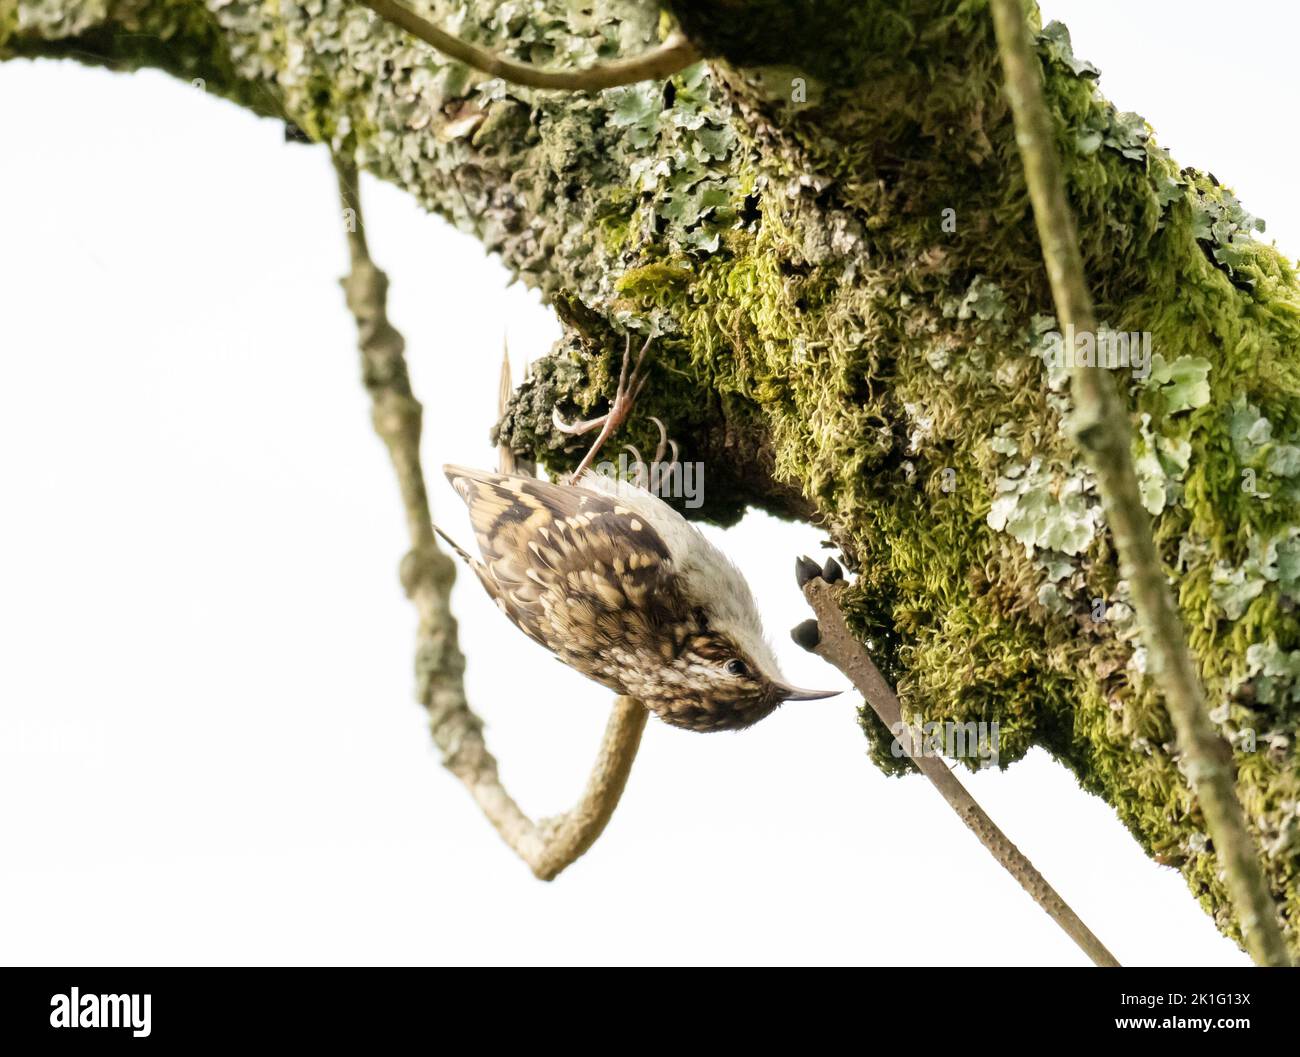 A Eurasian Treecreeper, Certhia familiaris, in Ambleside, Lake District, UK. Stock Photo